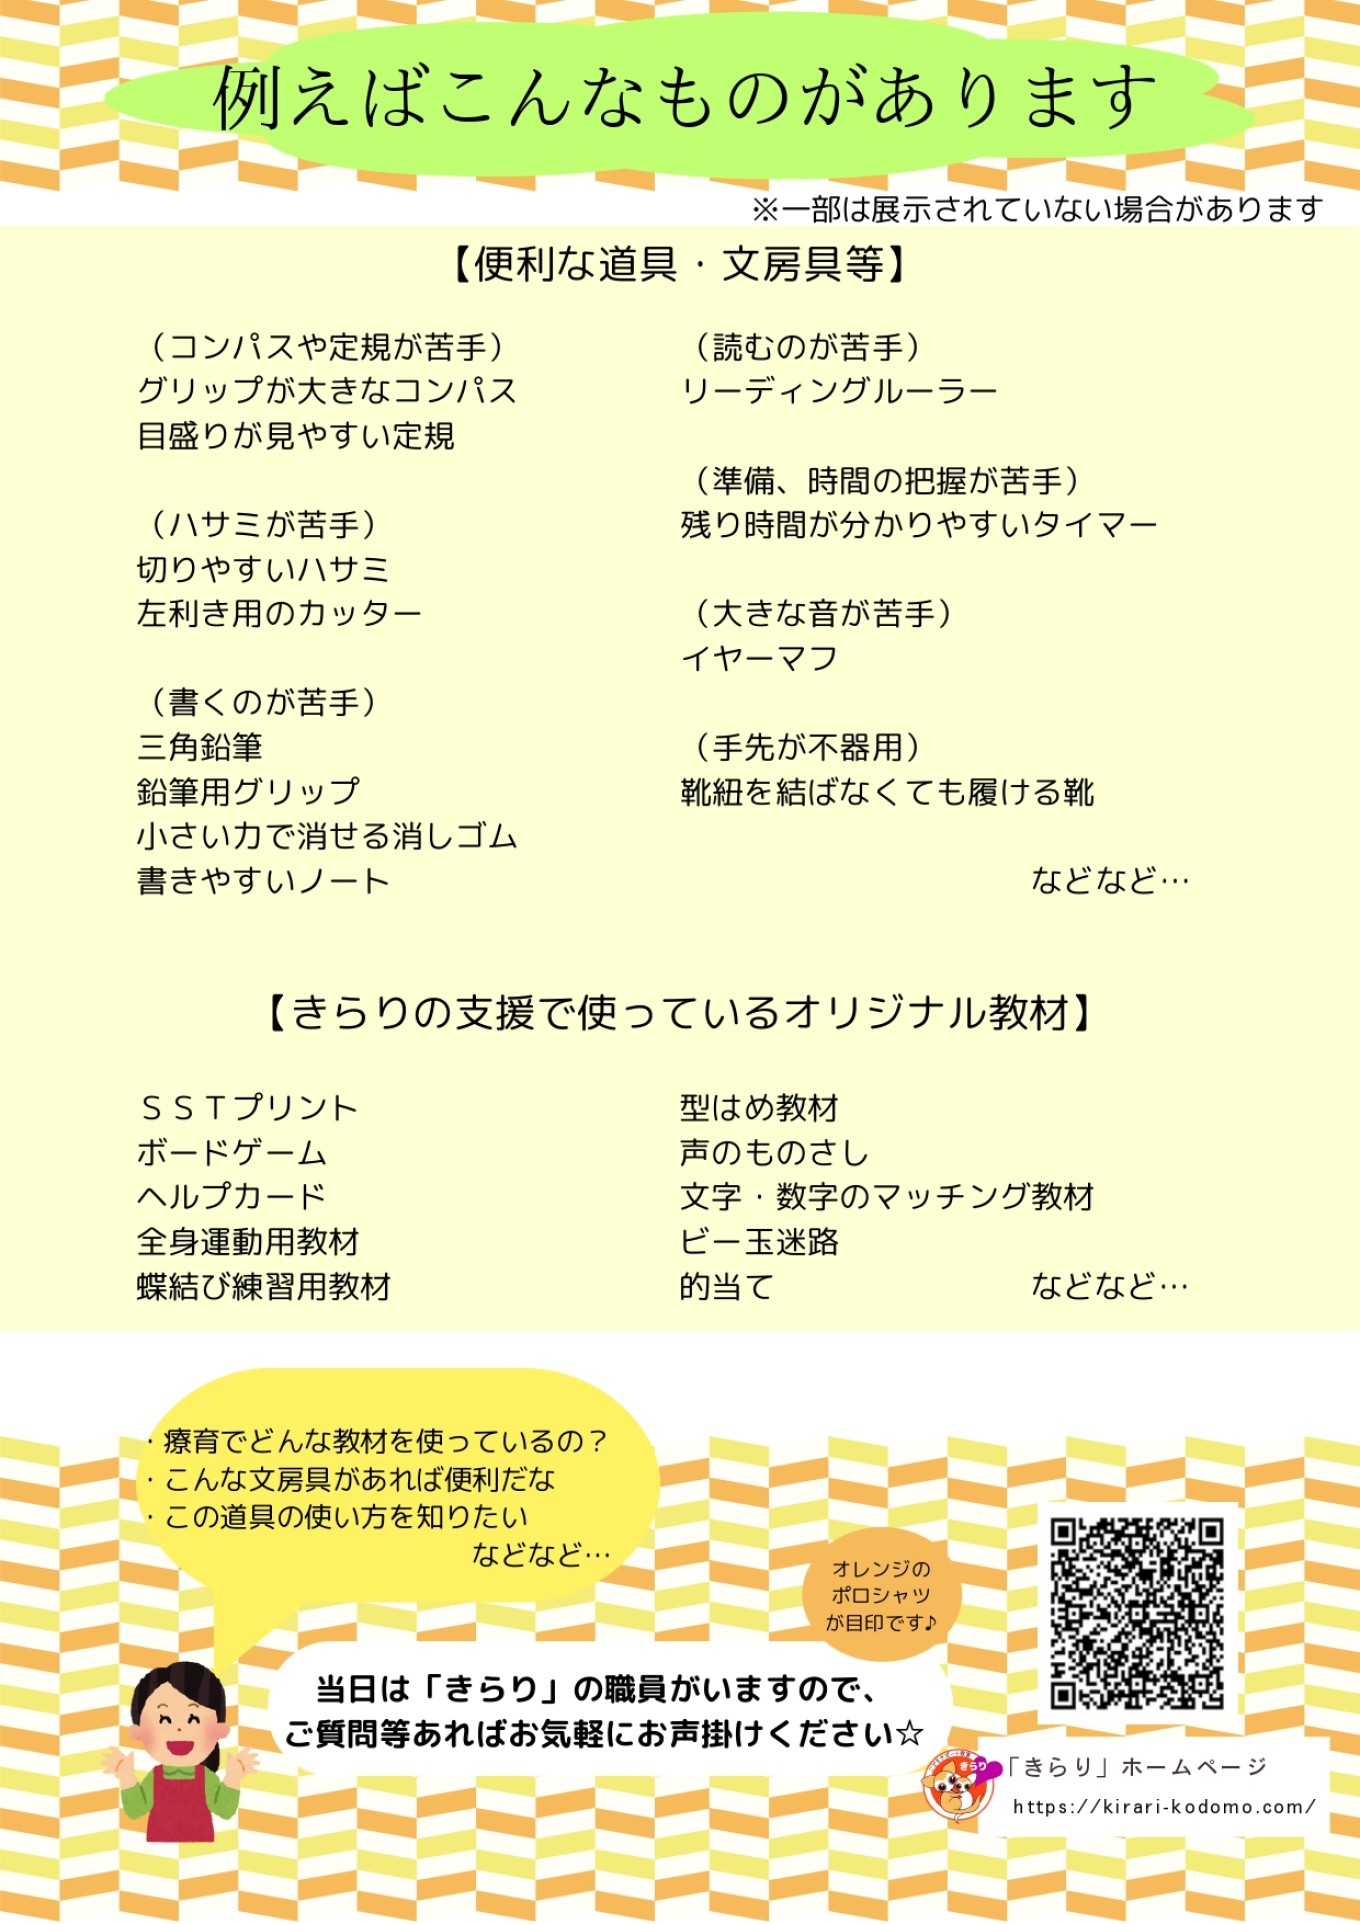 こどもサポート教室「きらり」+岡山市５校舎合同イベント (2)_page-0002.jpg